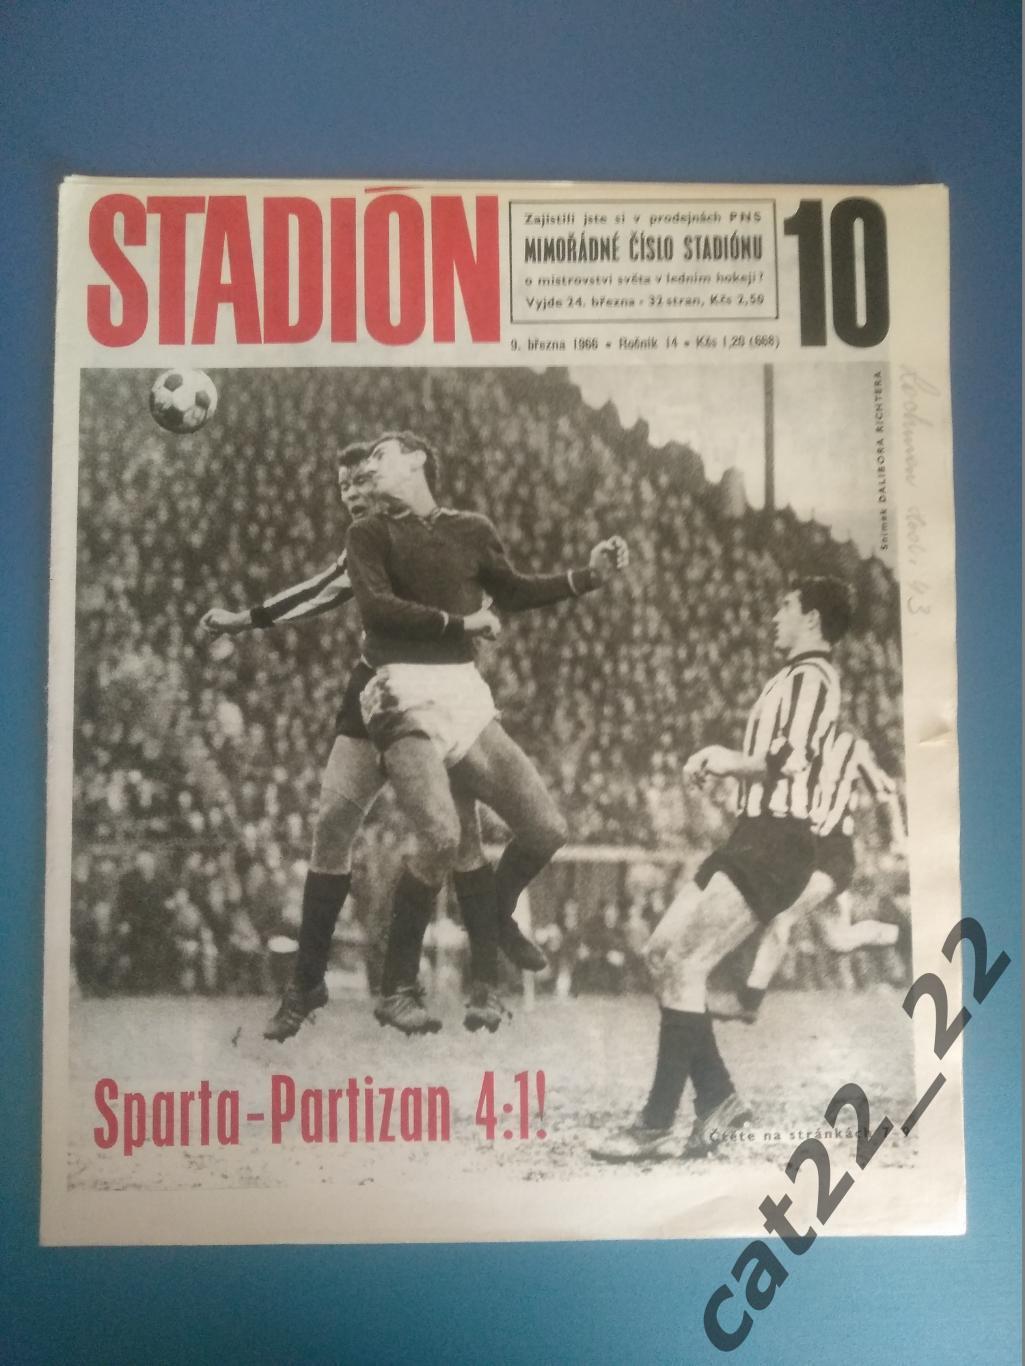 Журнал Стадион/Stadion. Полный номер. 10 1966